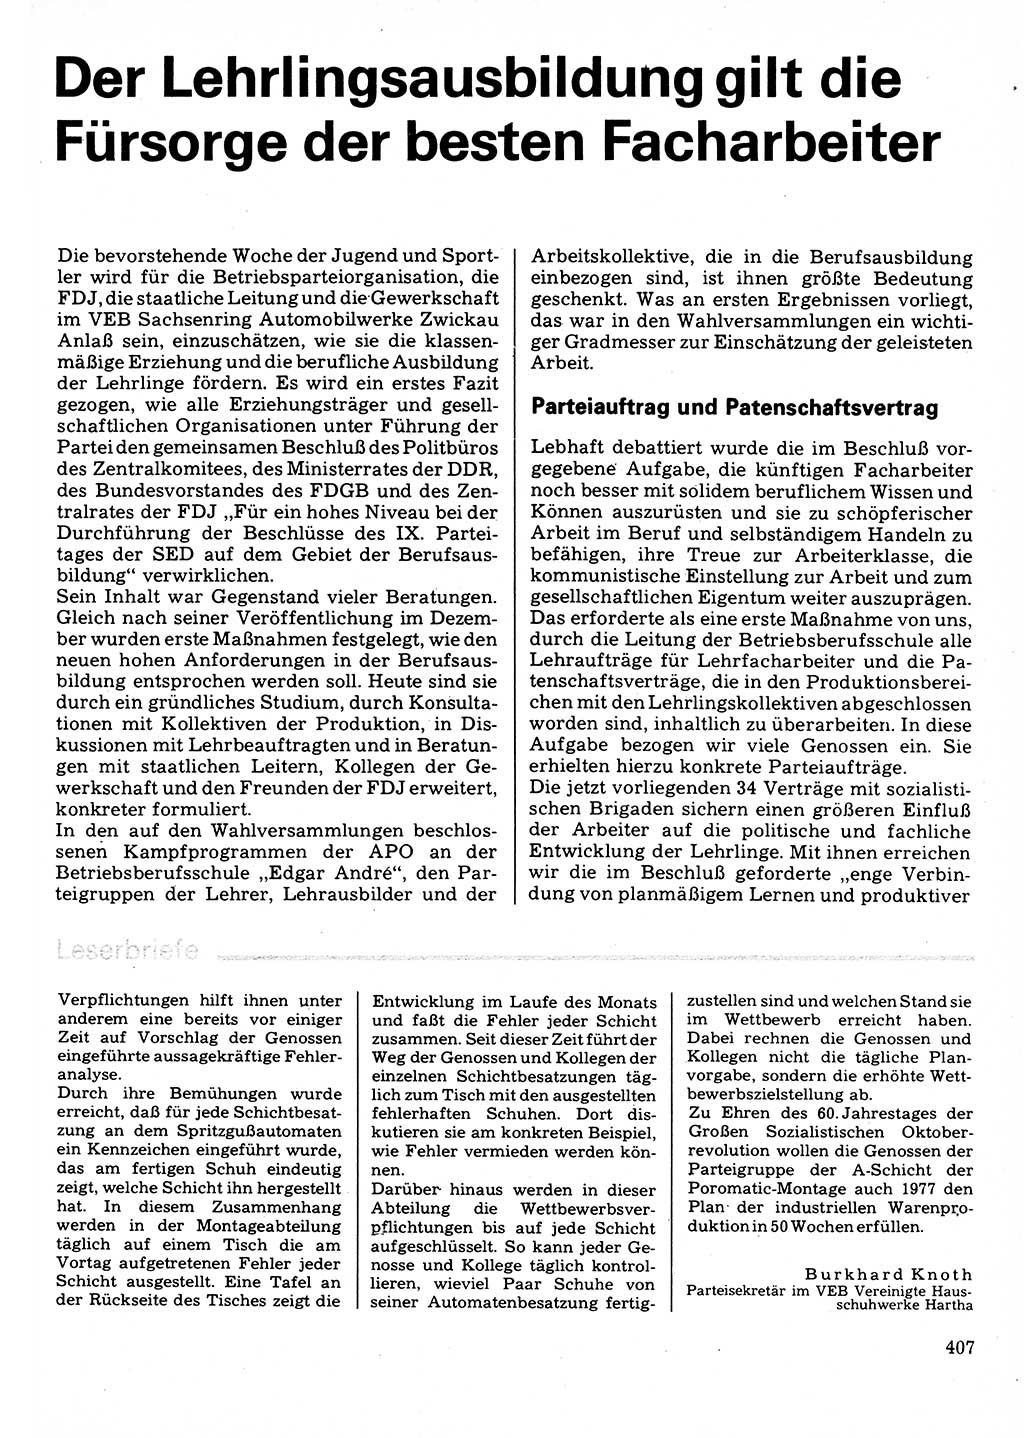 Neuer Weg (NW), Organ des Zentralkomitees (ZK) der SED (Sozialistische Einheitspartei Deutschlands) für Fragen des Parteilebens, 32. Jahrgang [Deutsche Demokratische Republik (DDR)] 1977, Seite 407 (NW ZK SED DDR 1977, S. 407)